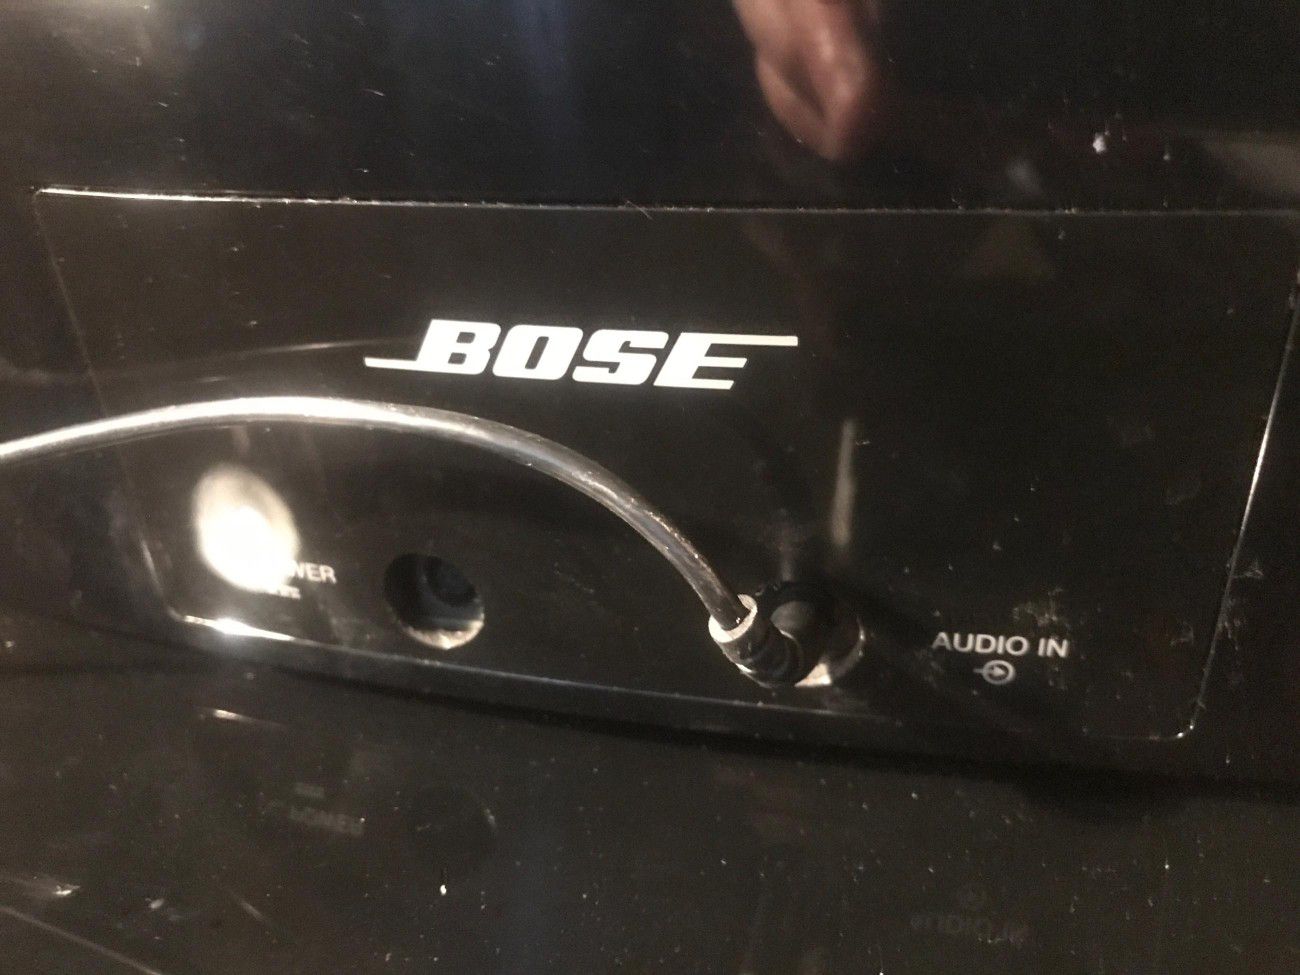 Bose dock speaker series 2